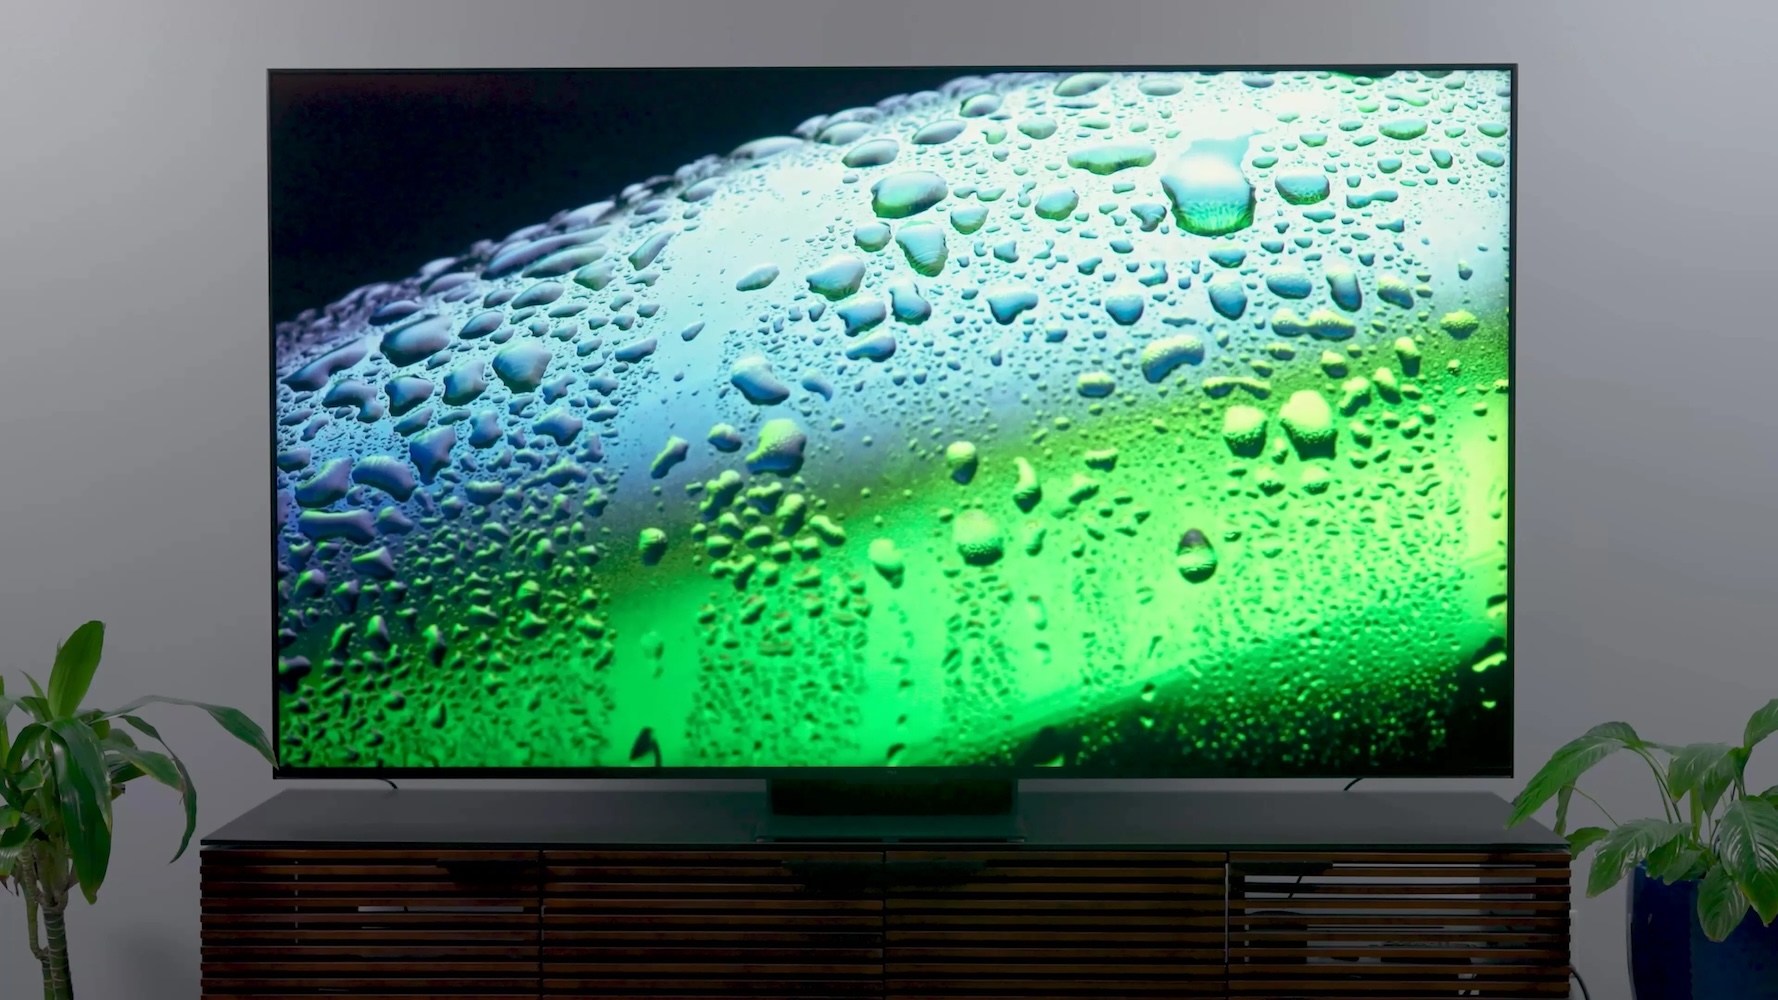 Samsung acaba de lanzar una gigantesca televisión que no podrás